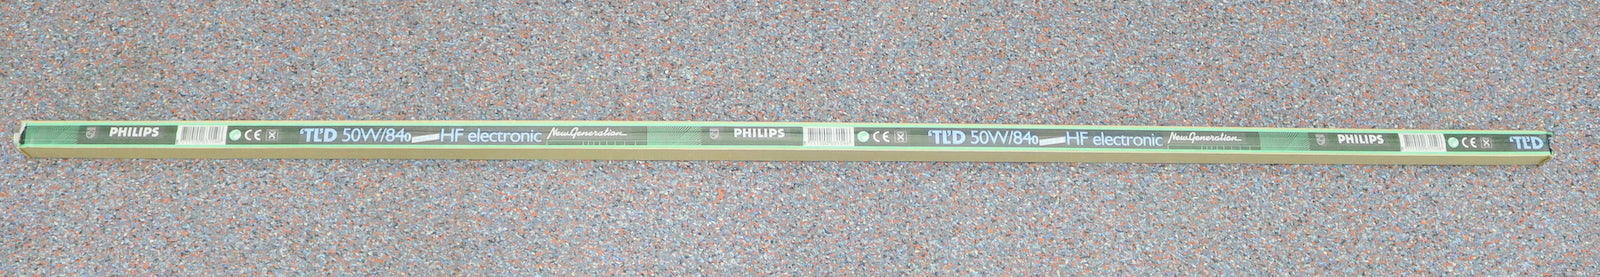 Bild des Artikels PHILIPS-25x-Leuchtstoffröhre-TLD50W/840-50W-Länge-150cm-kaltweiß-in-OVP